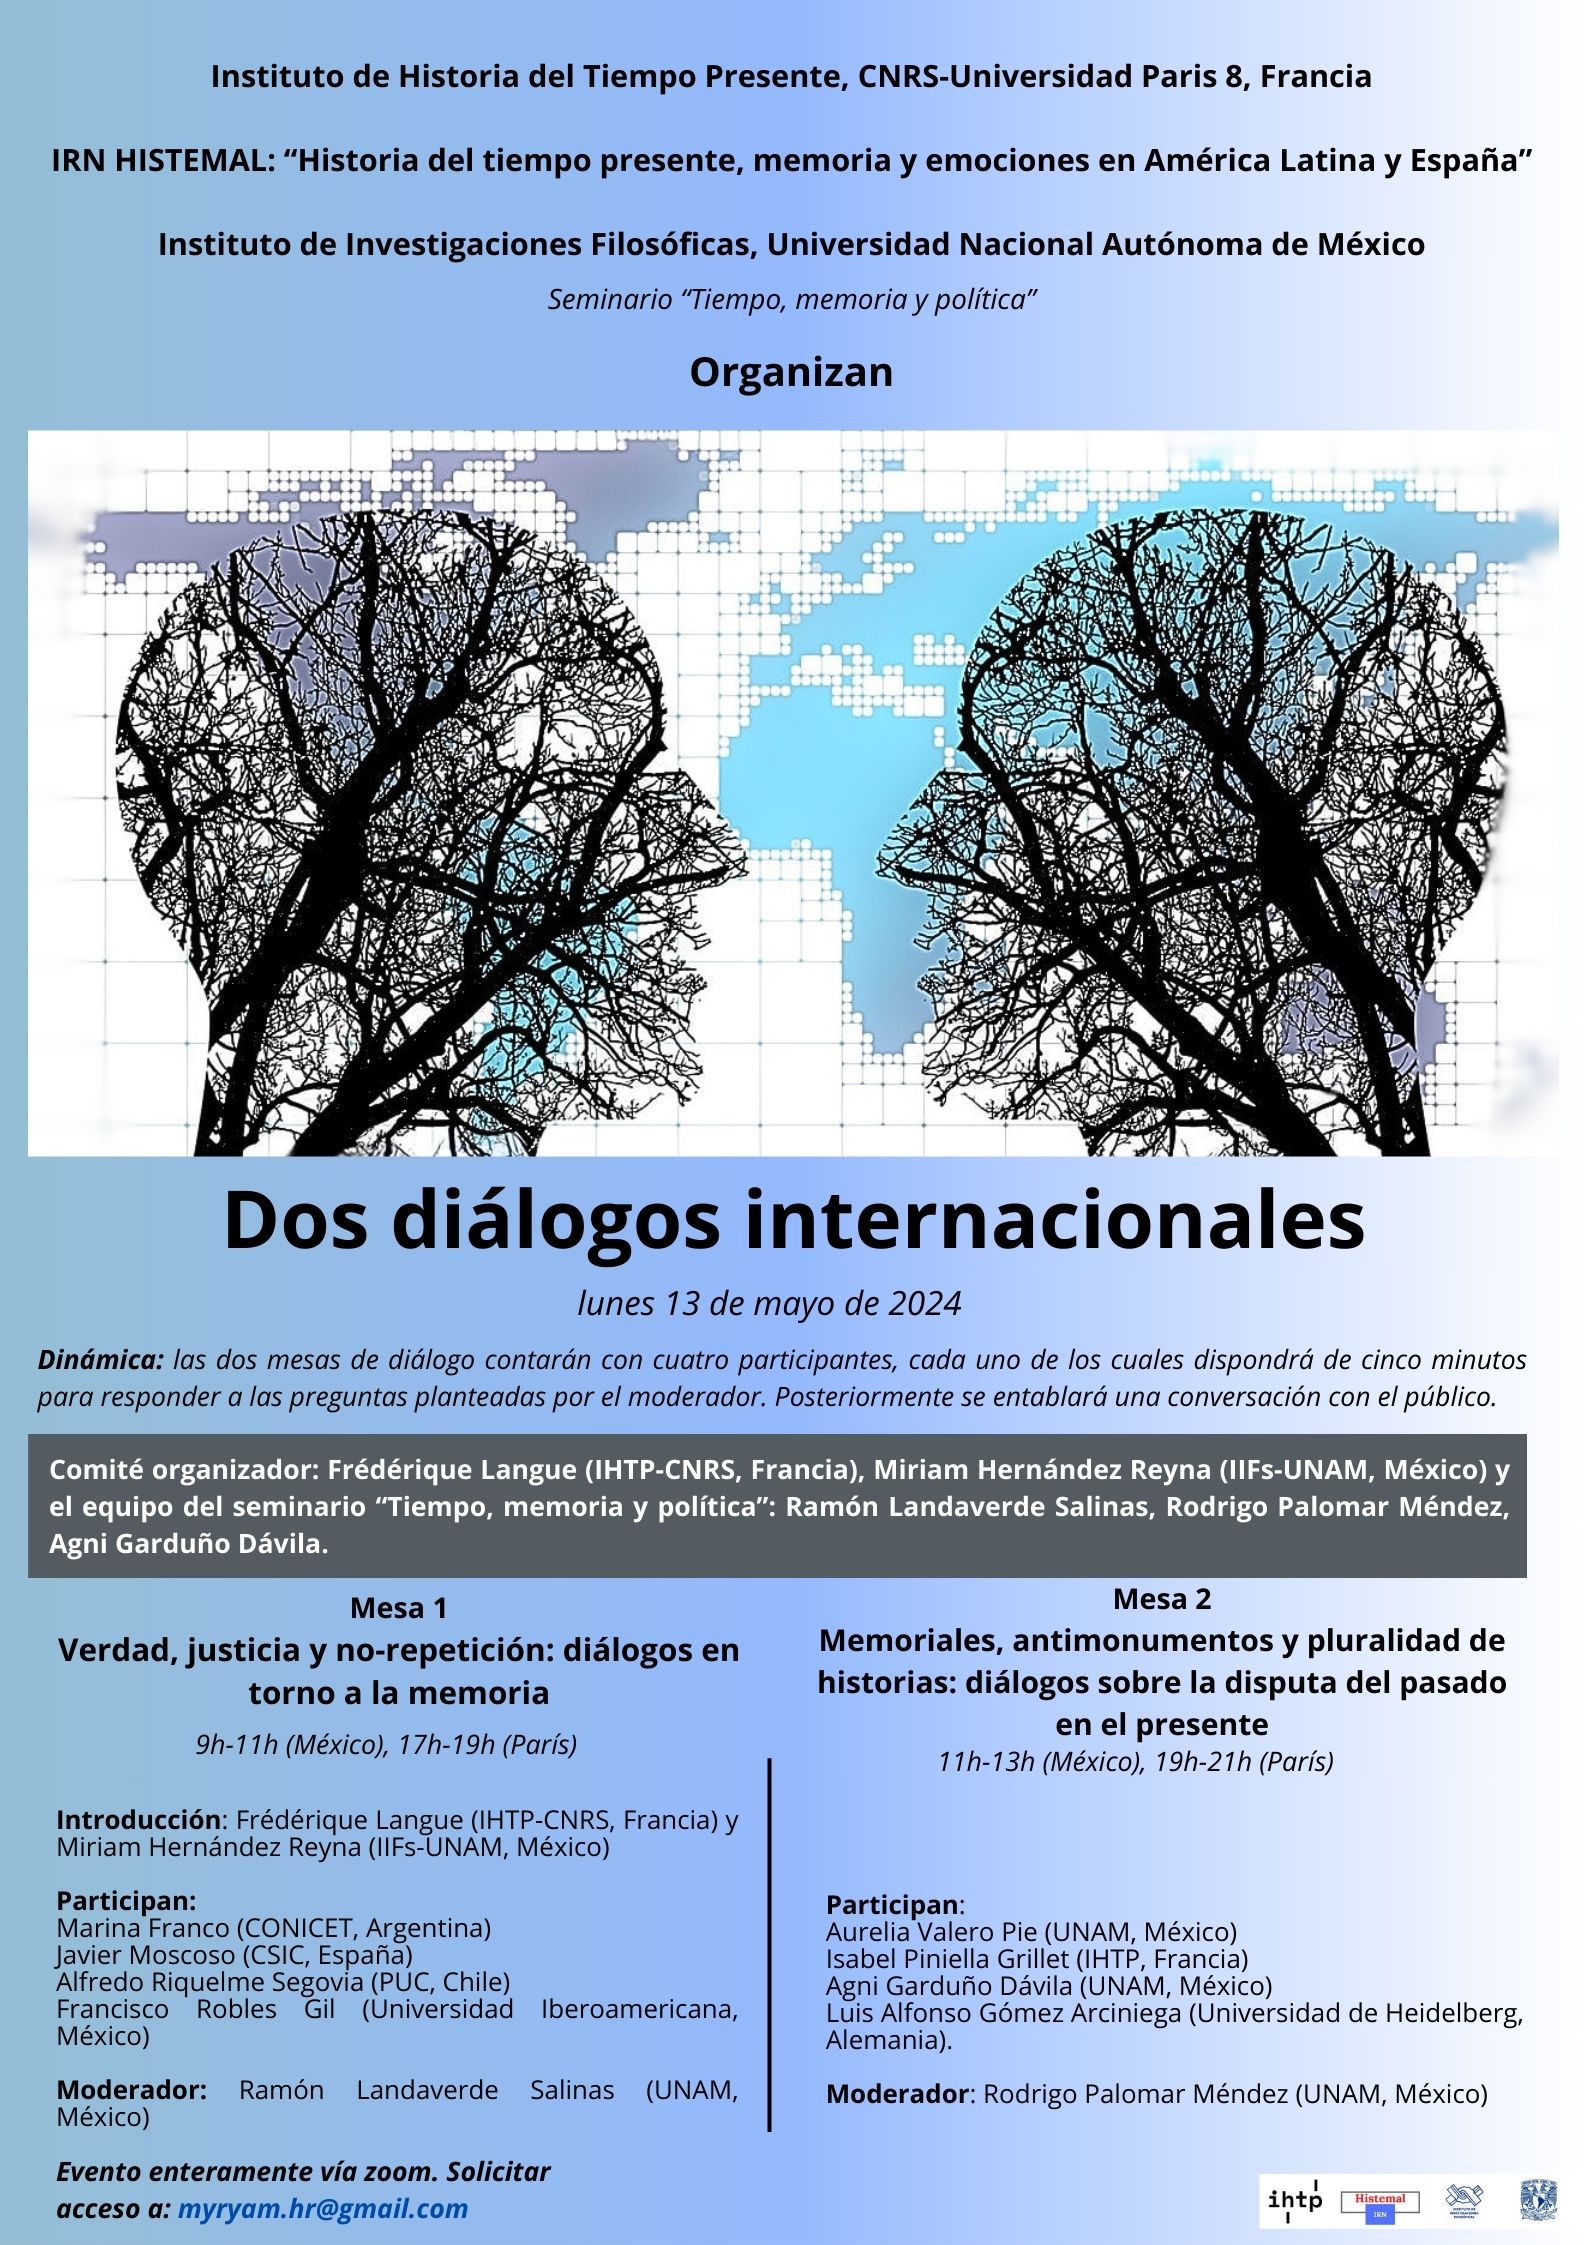 Poster del evento "Dialogos internacionales" del IRN HISTEMAL y del IIFs